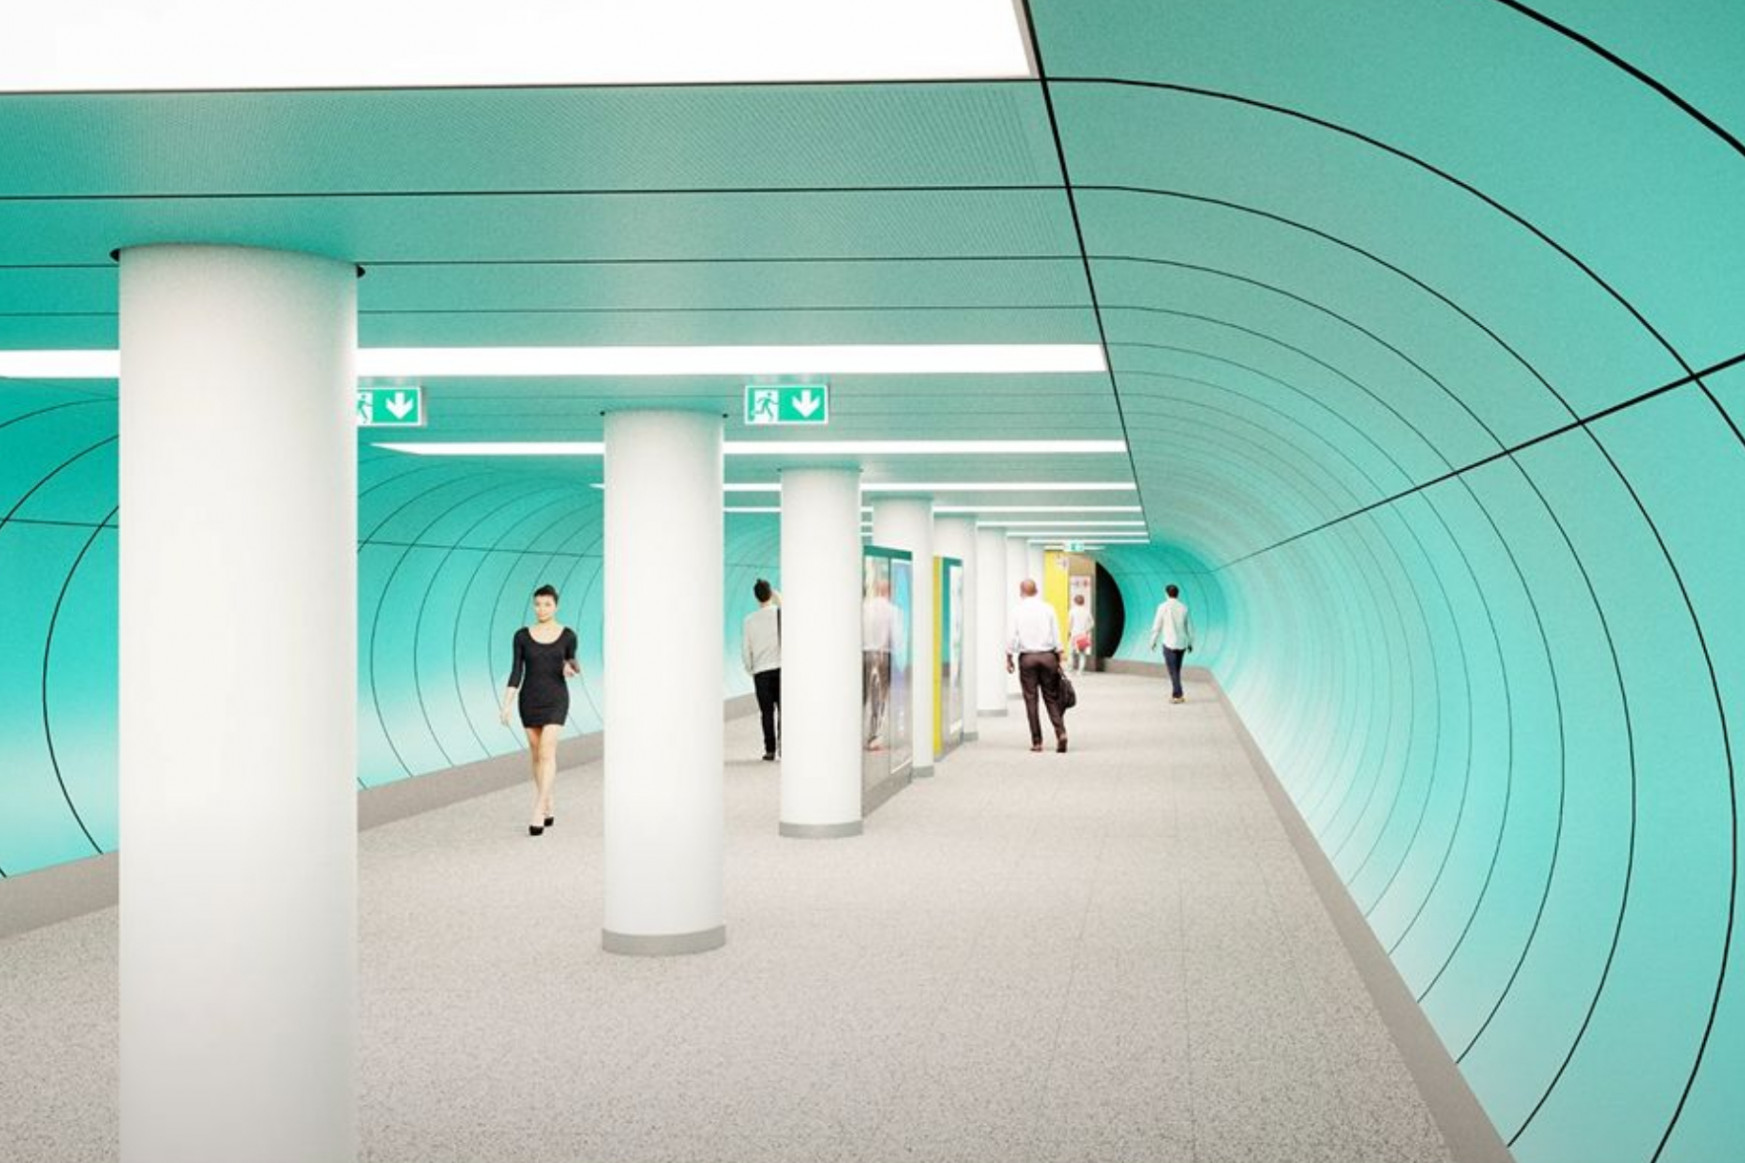 Retróűrhajós-stílusúak lesznek a 3-as metró felújított állomásai